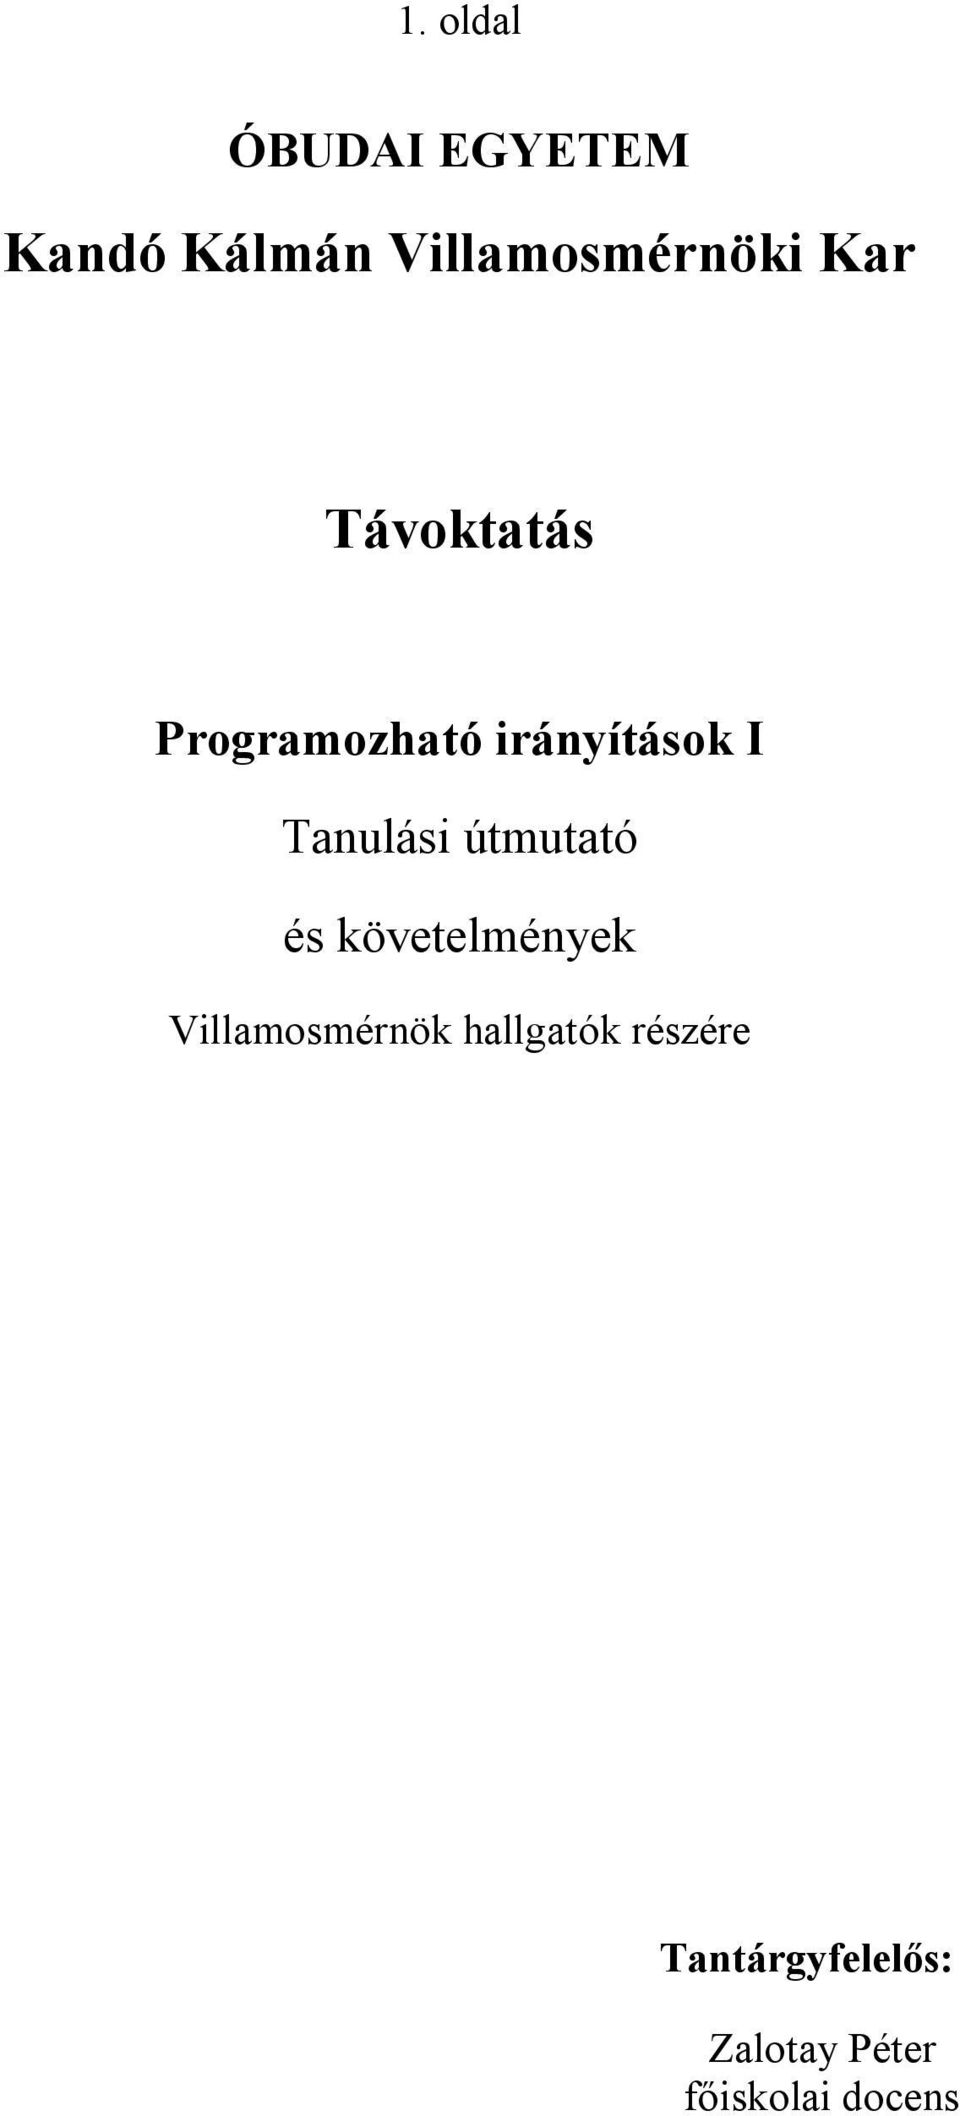 Kandó Kálmán Villamosmérnöki Kar. Távoktatás - PDF Ingyenes letöltés